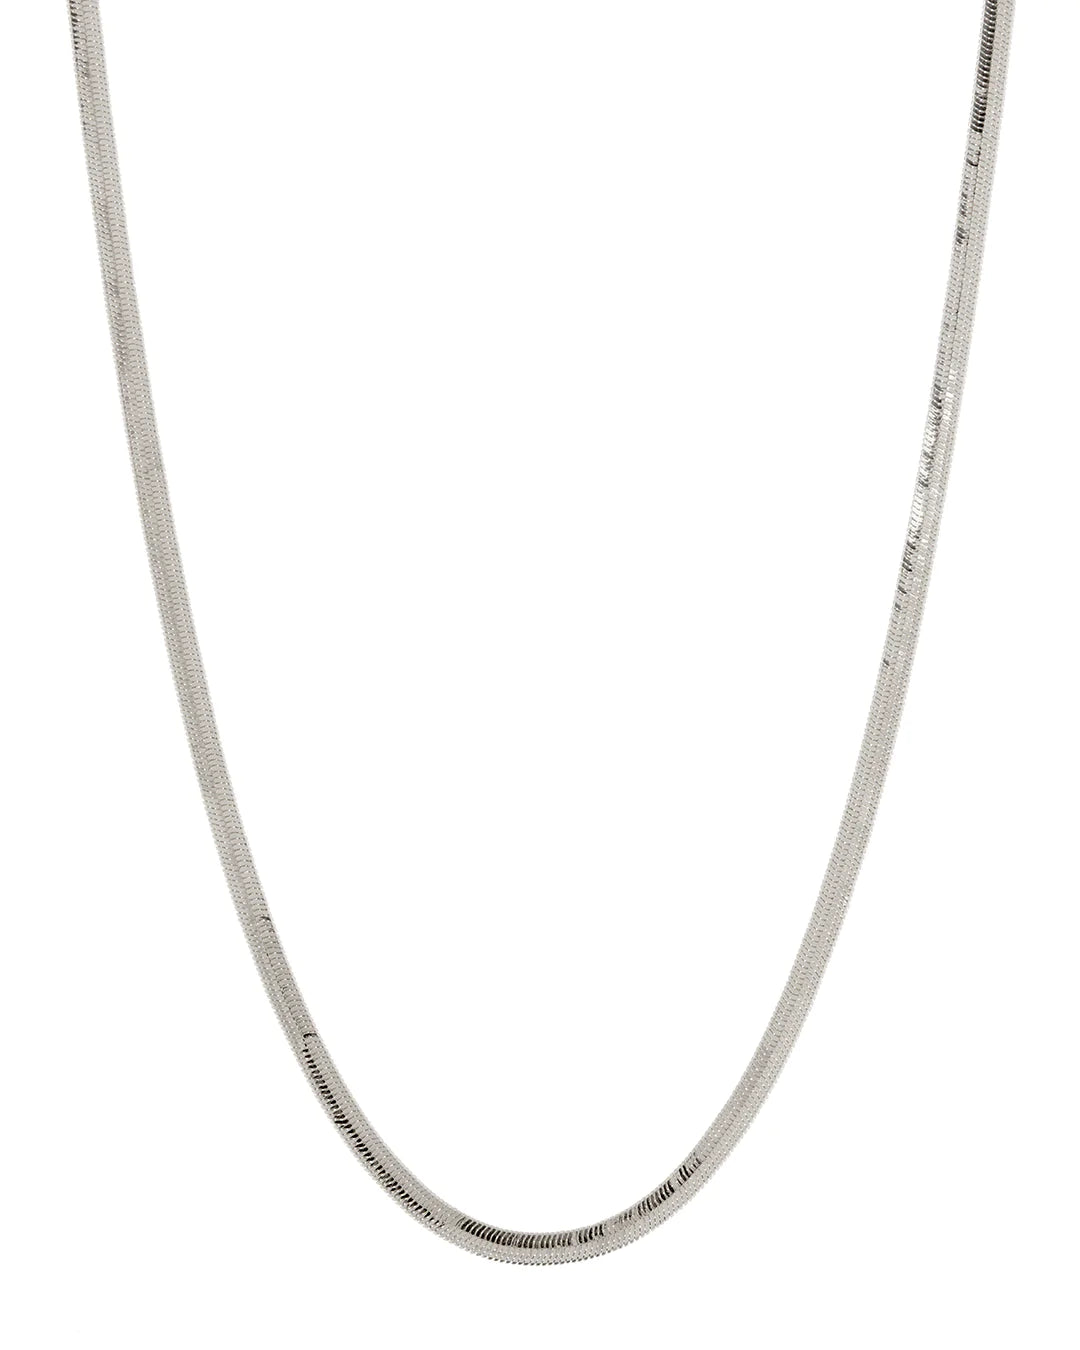 Classique Herringbone Chain - Premium  Denim from Luv AJ - Just $70! Shop now at shopthedenimbar